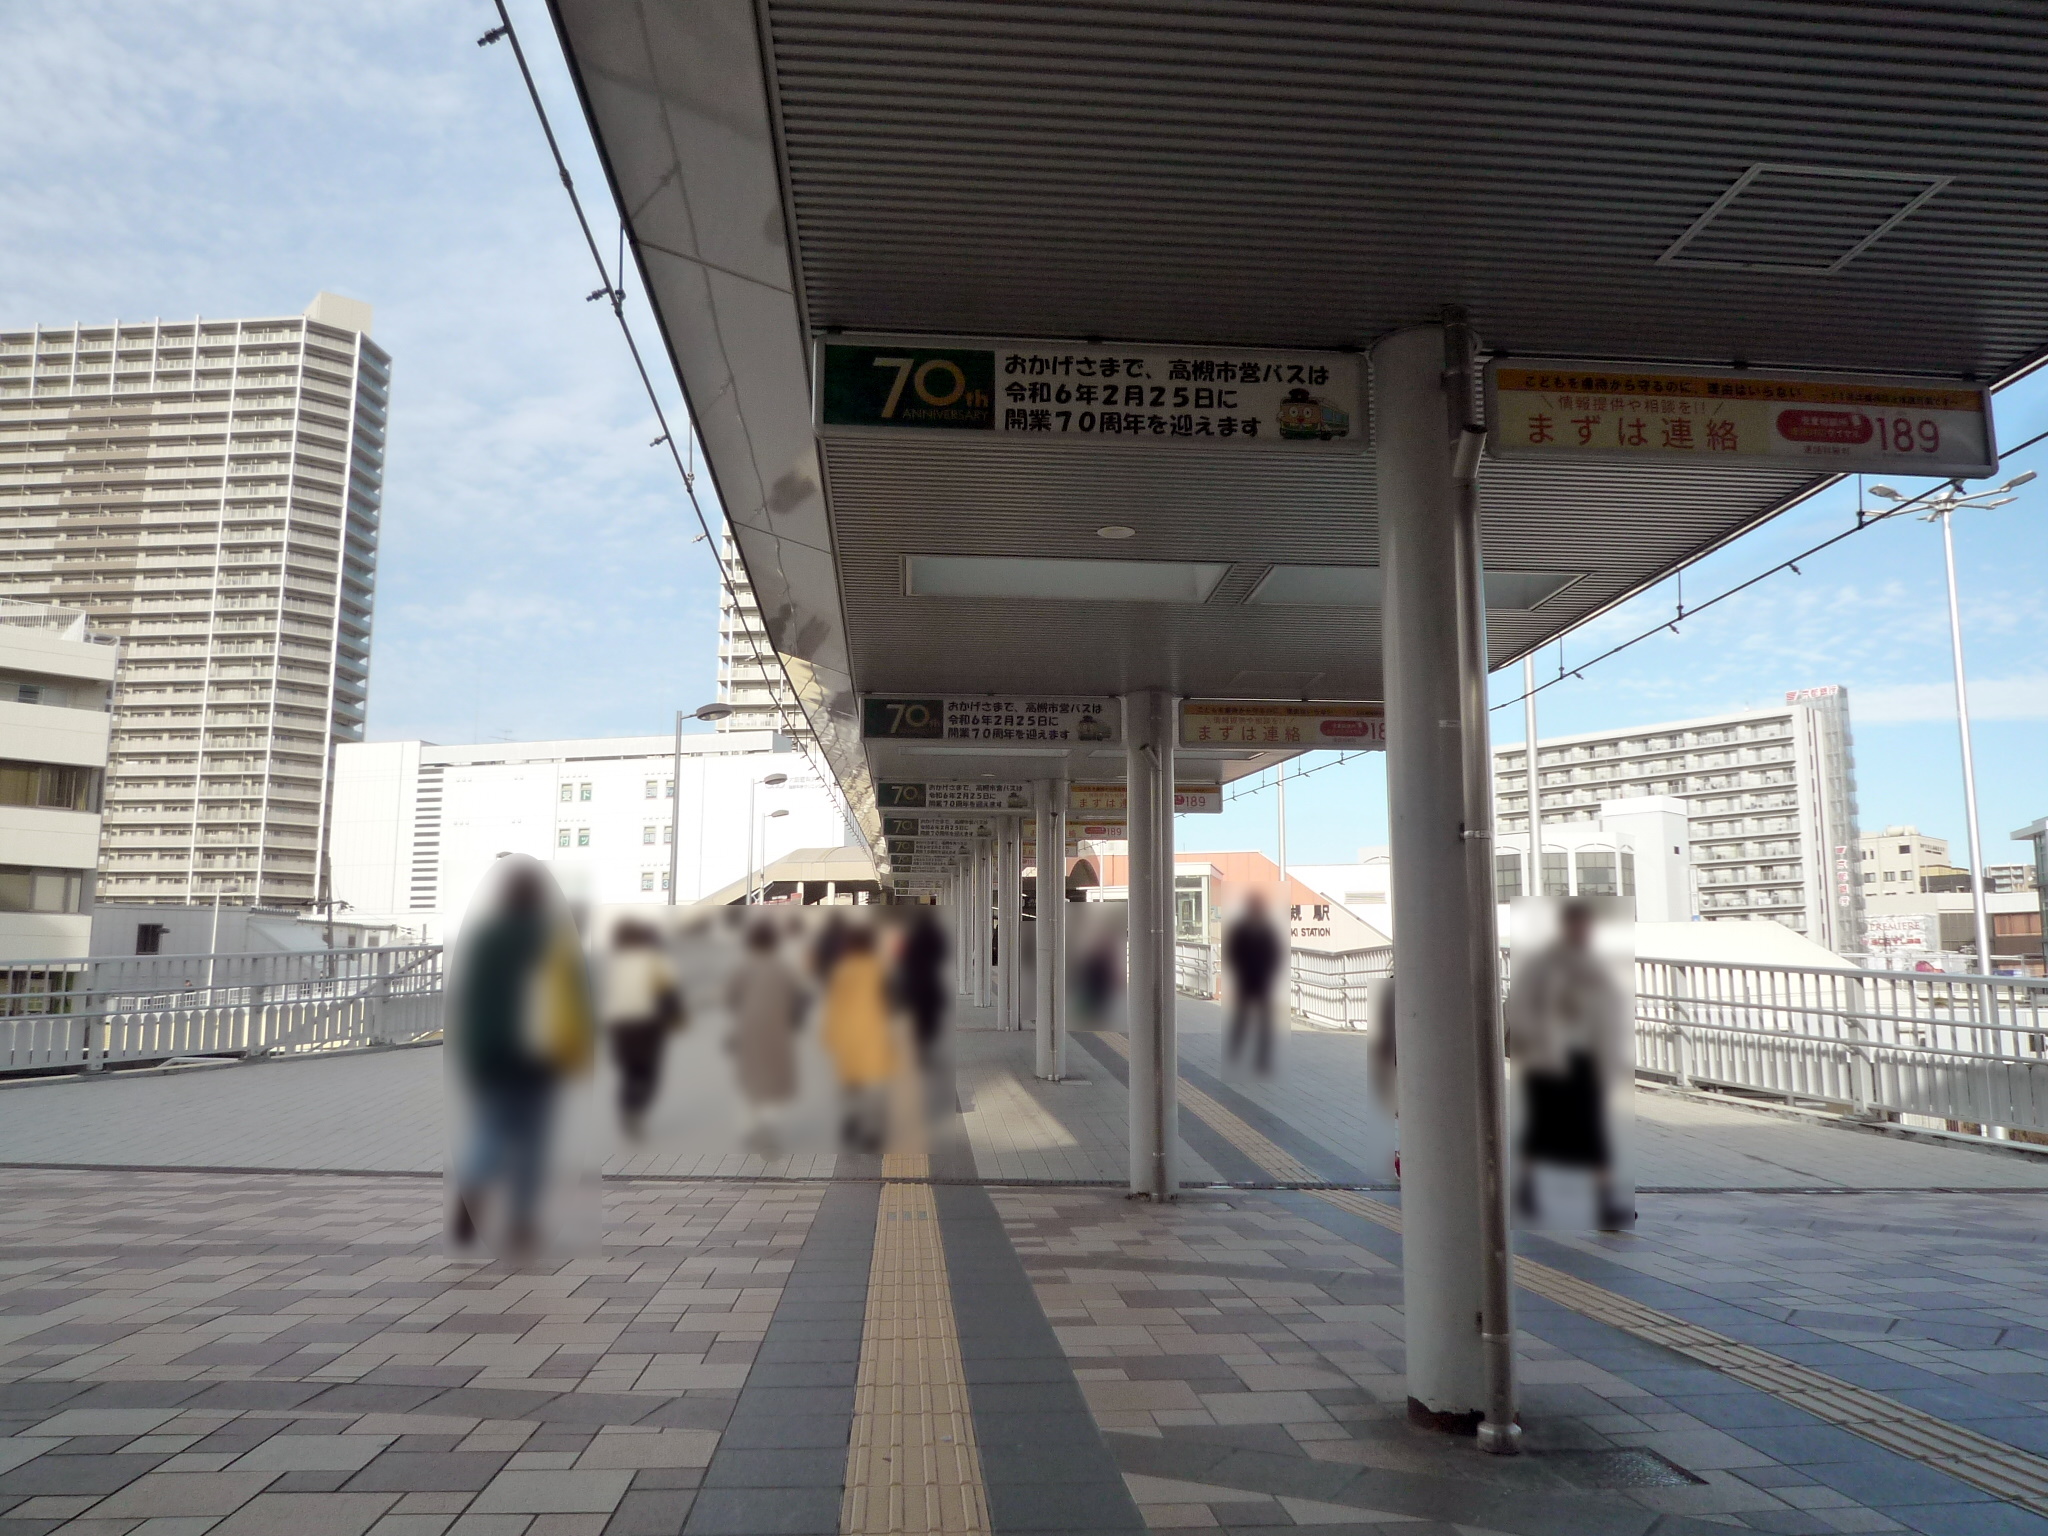 JR高槻駅南側の人工デッキに掲載されている横断幕の写真